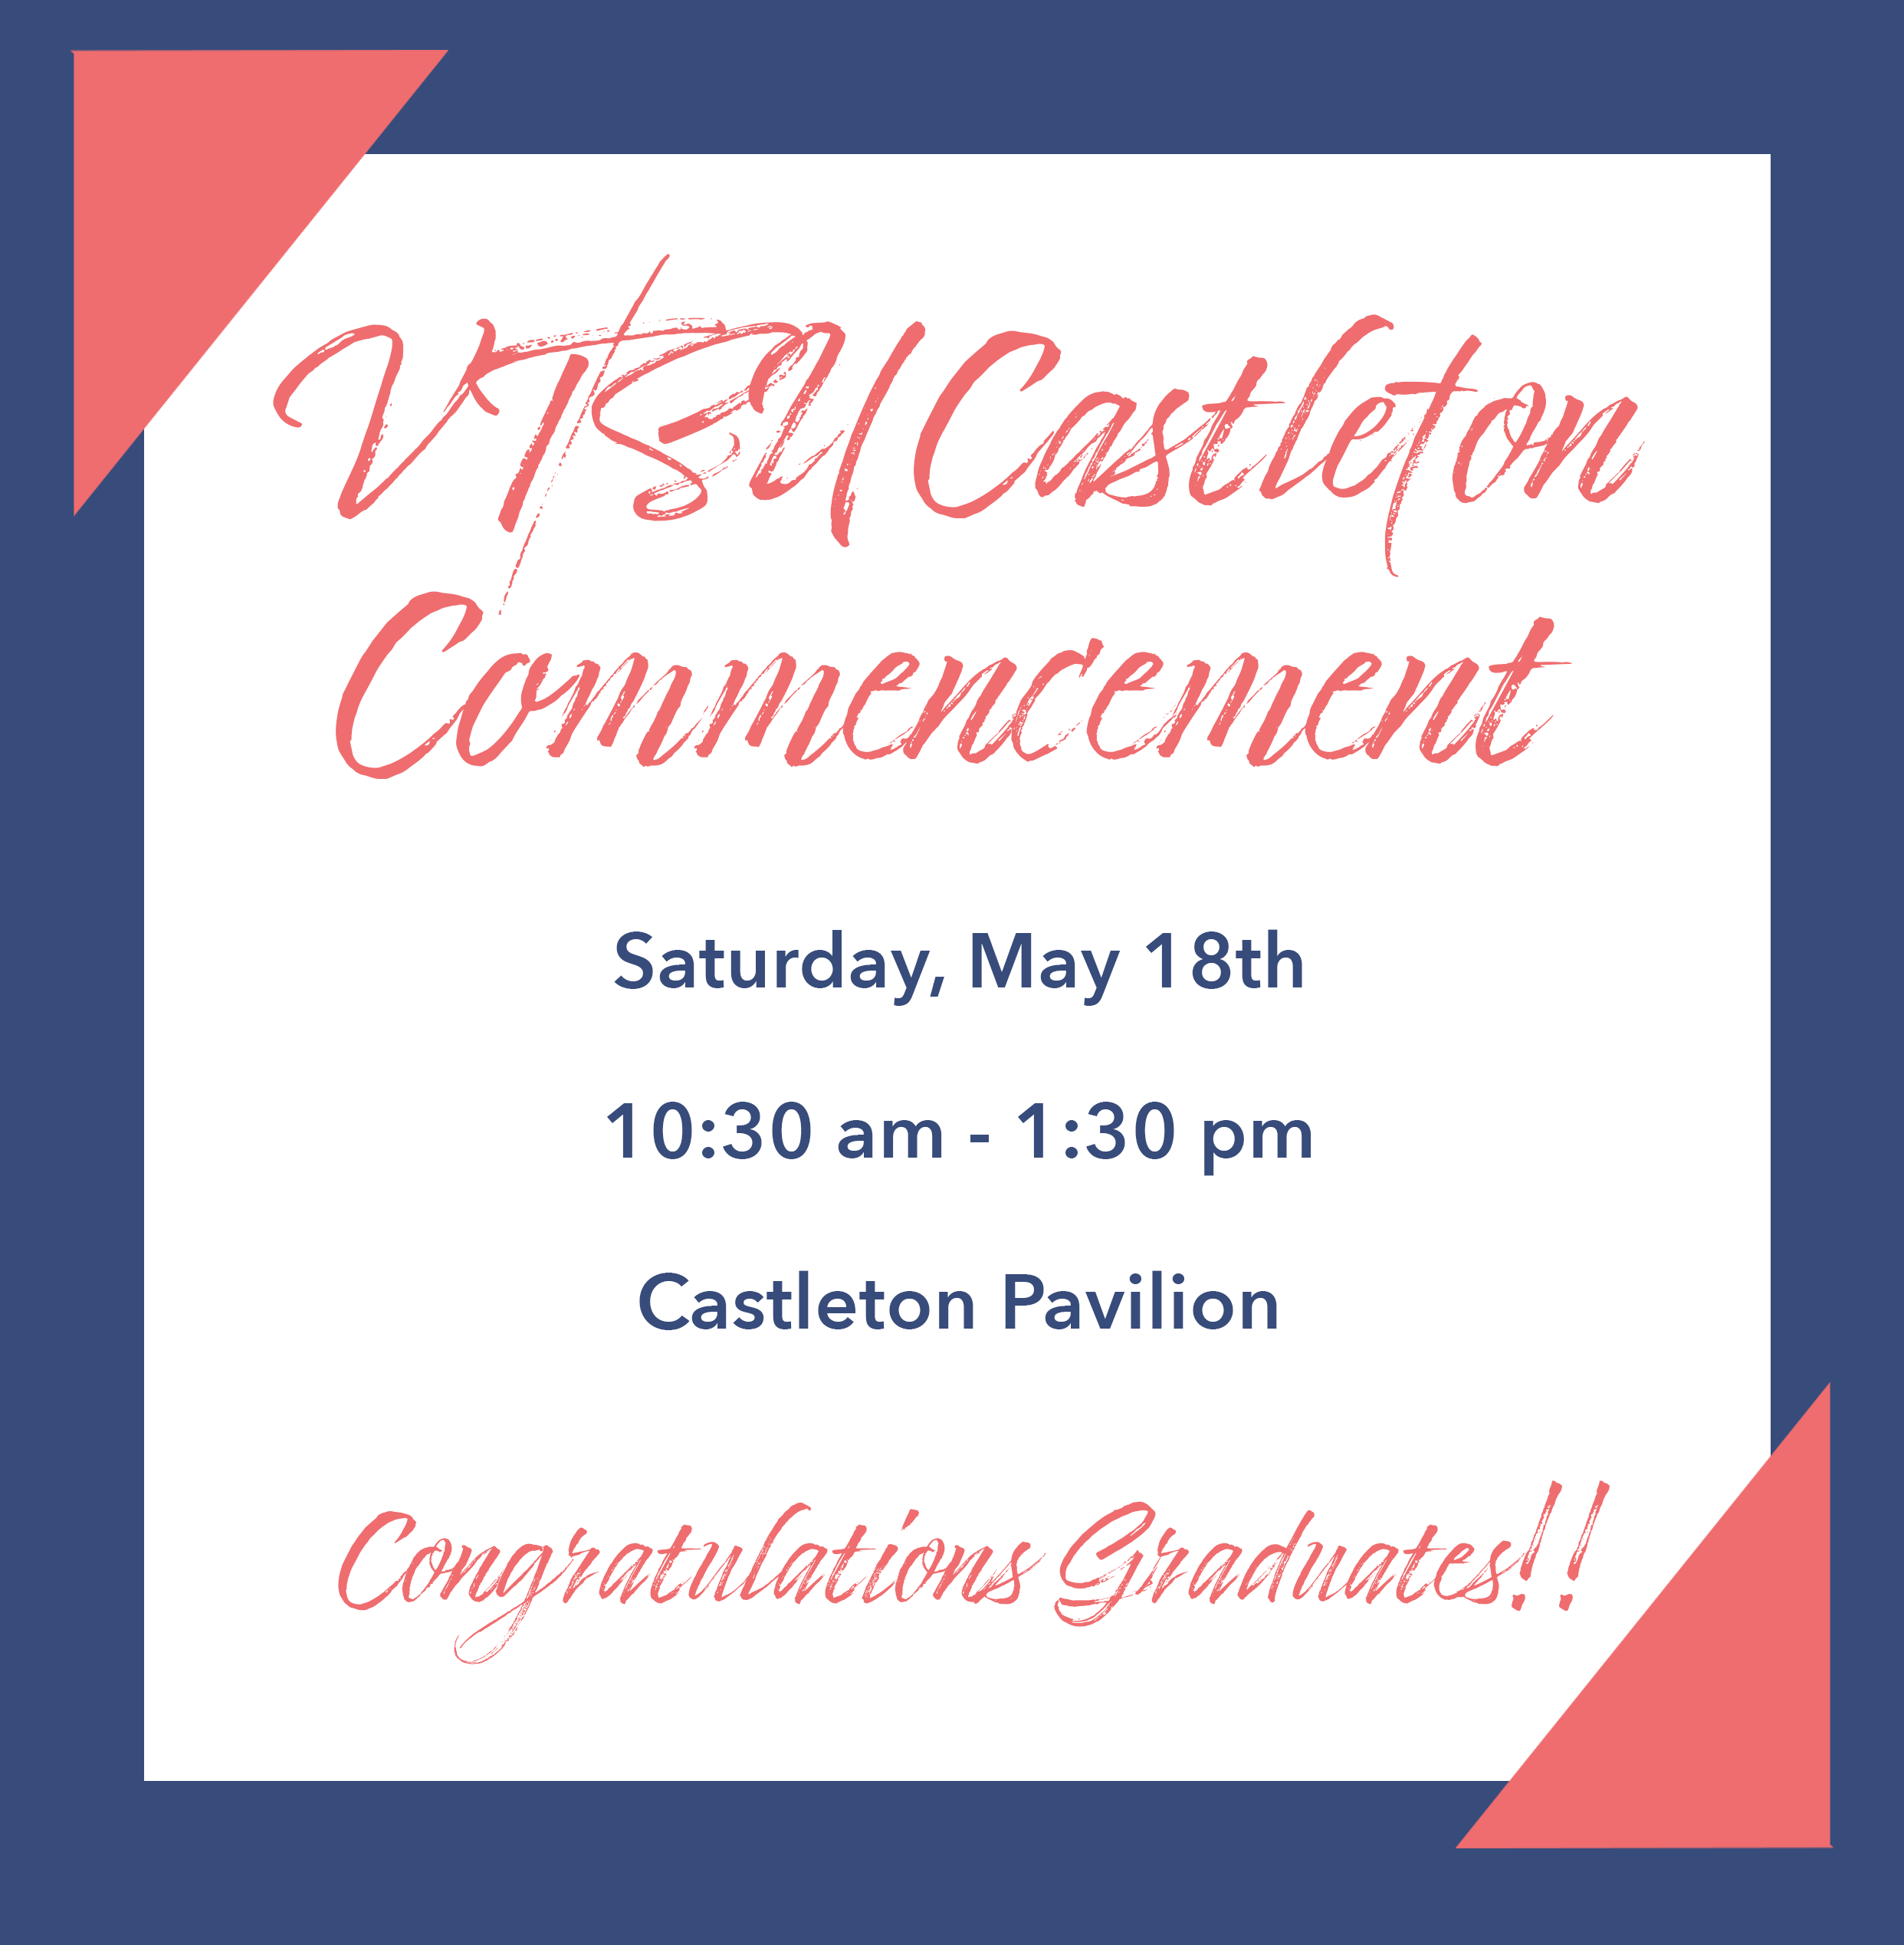 VTSU Castleton Commencement!